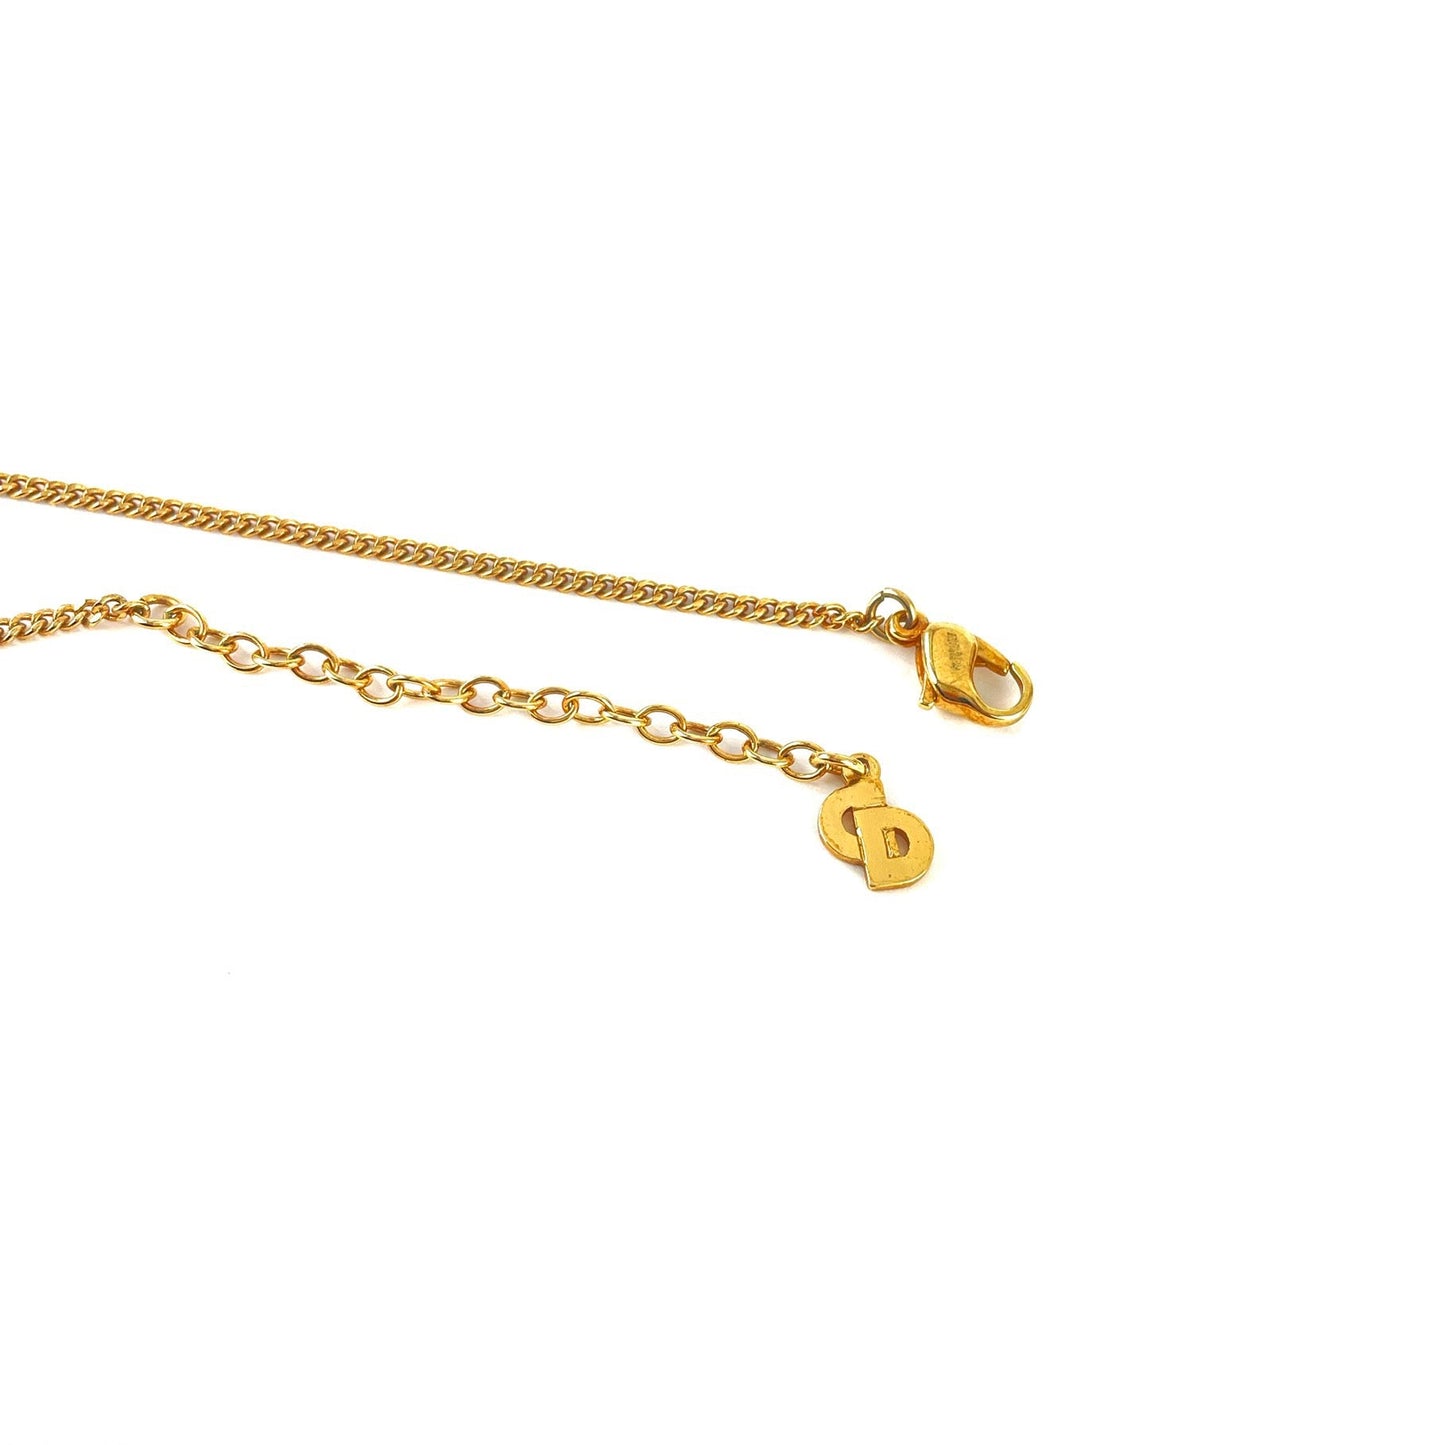 Christian Dior Logo Stone Necklace Gold Vintage Old jck57y